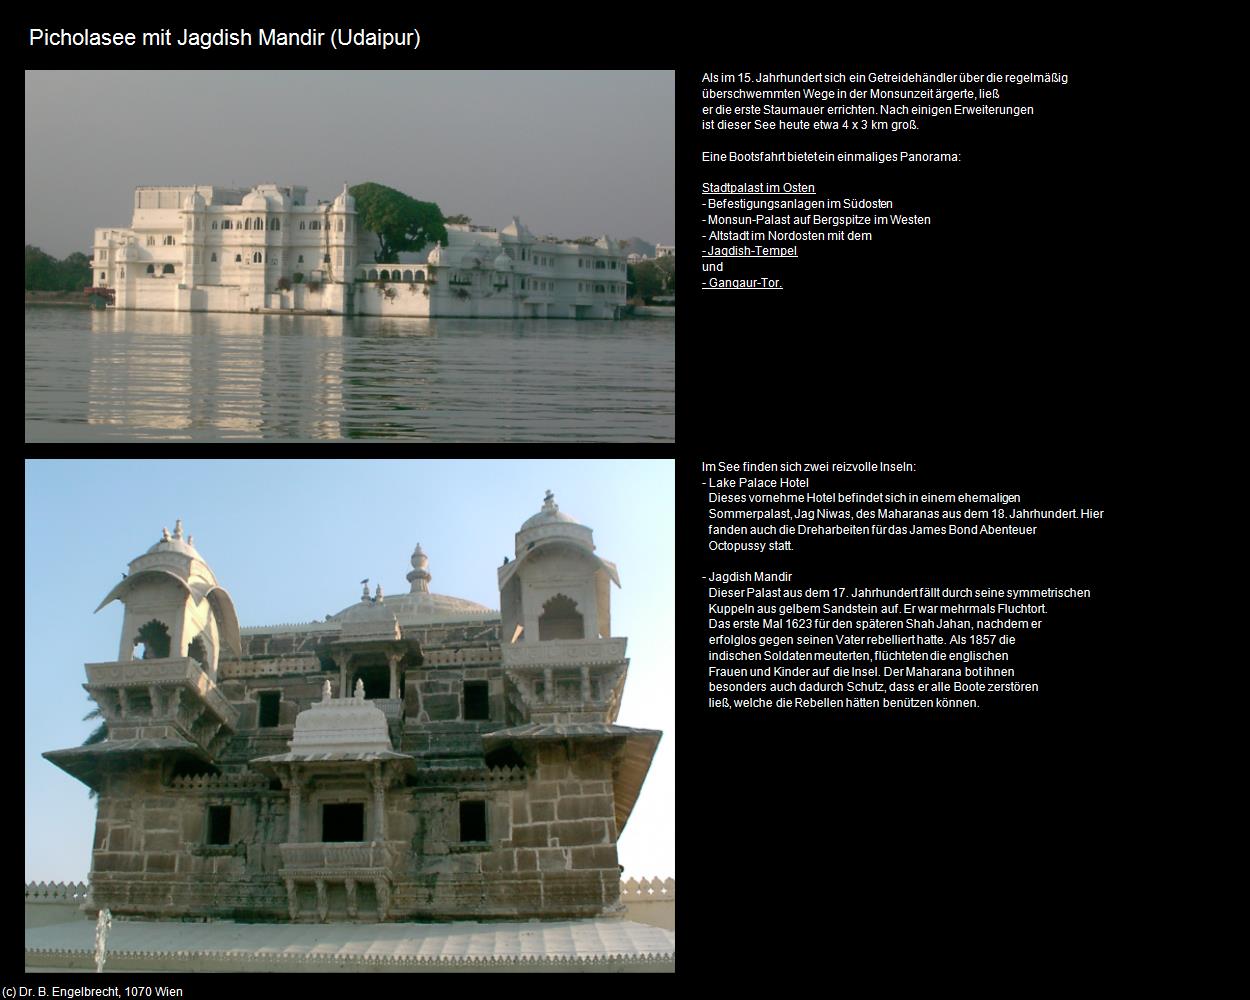 Picholasee mit Jagdish Mandir (Udaipur) in Rajasthan - das Land der Könige(c)B.Engelbrecht